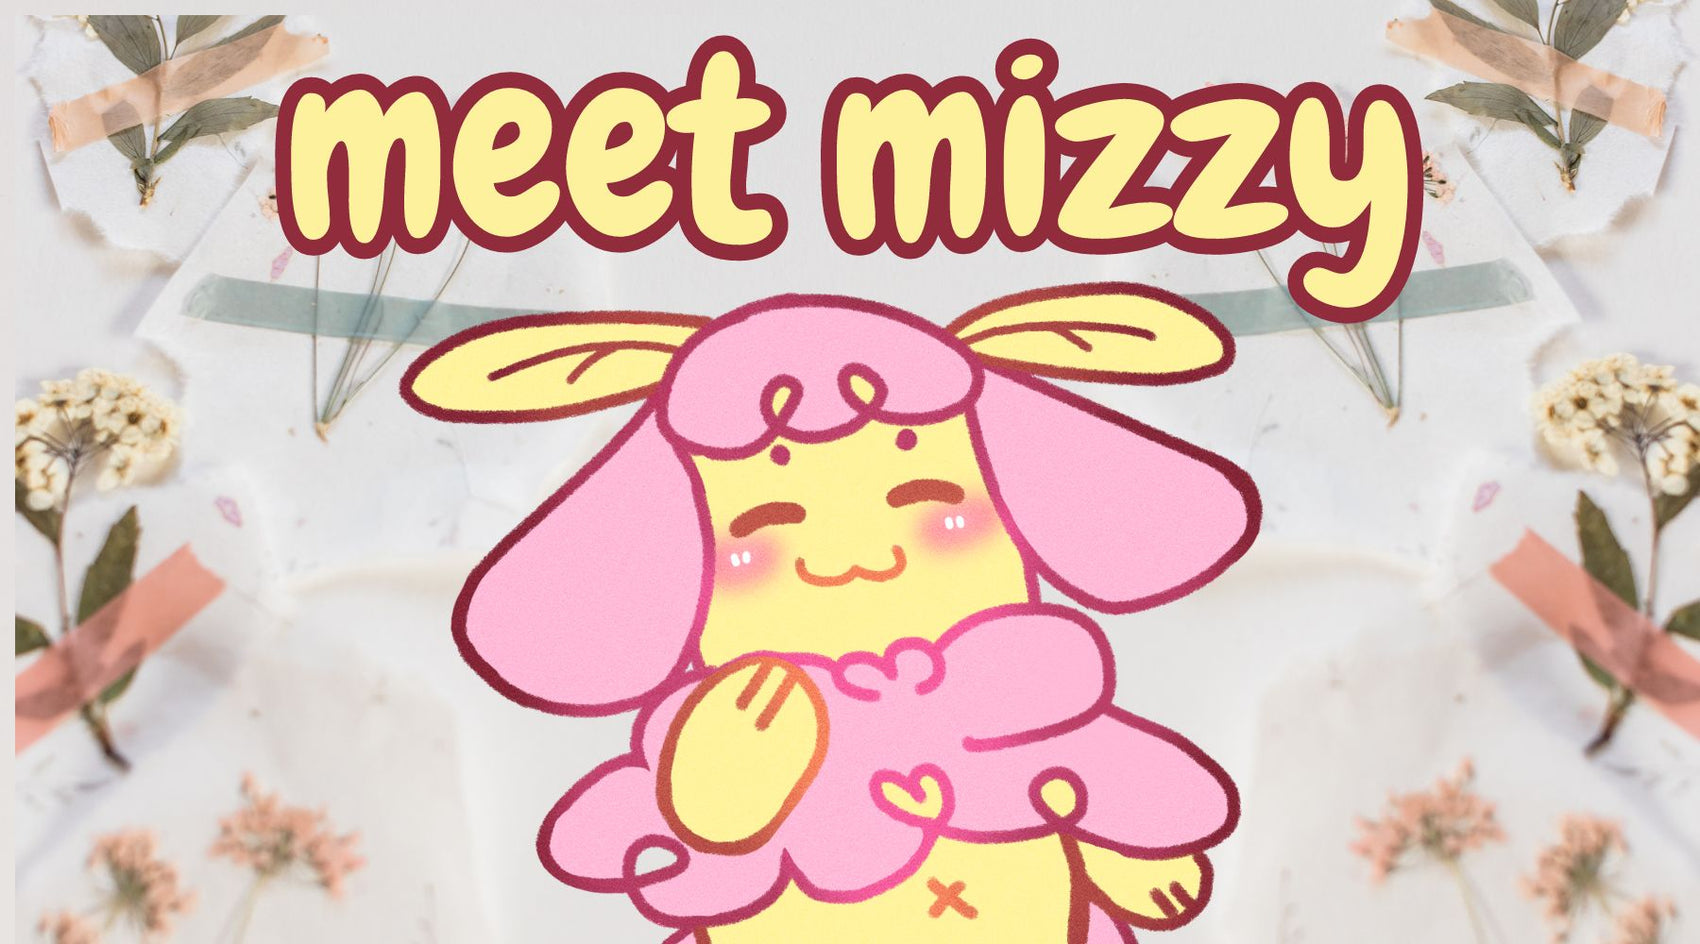 Meet Mizzy